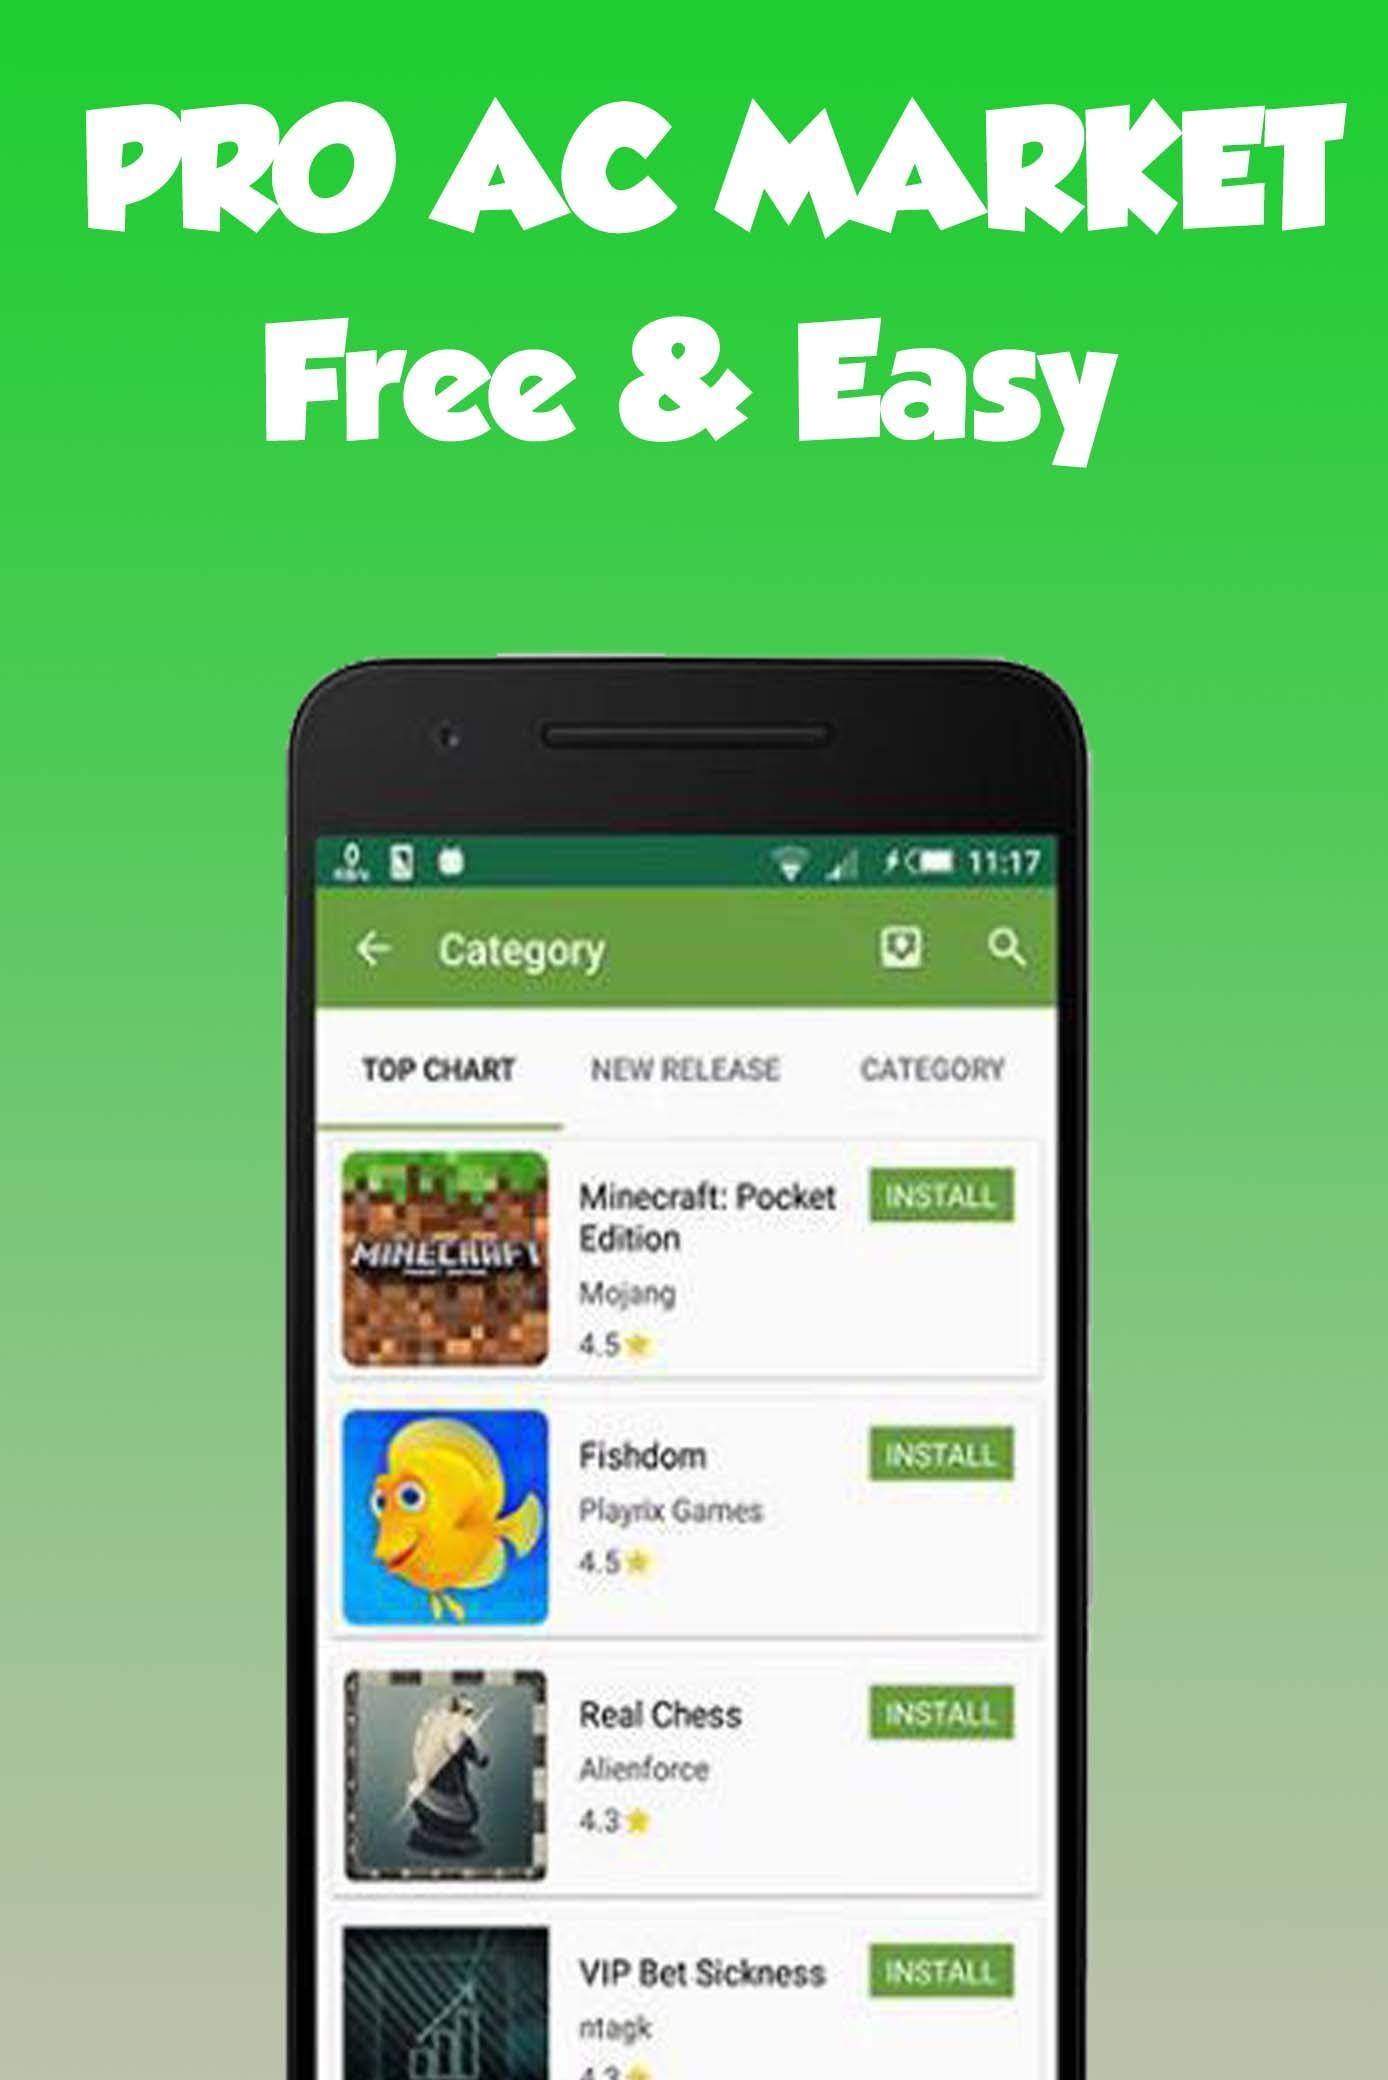 App Market Apk : Descargar 1 Mobile Market Apk Para Android | App